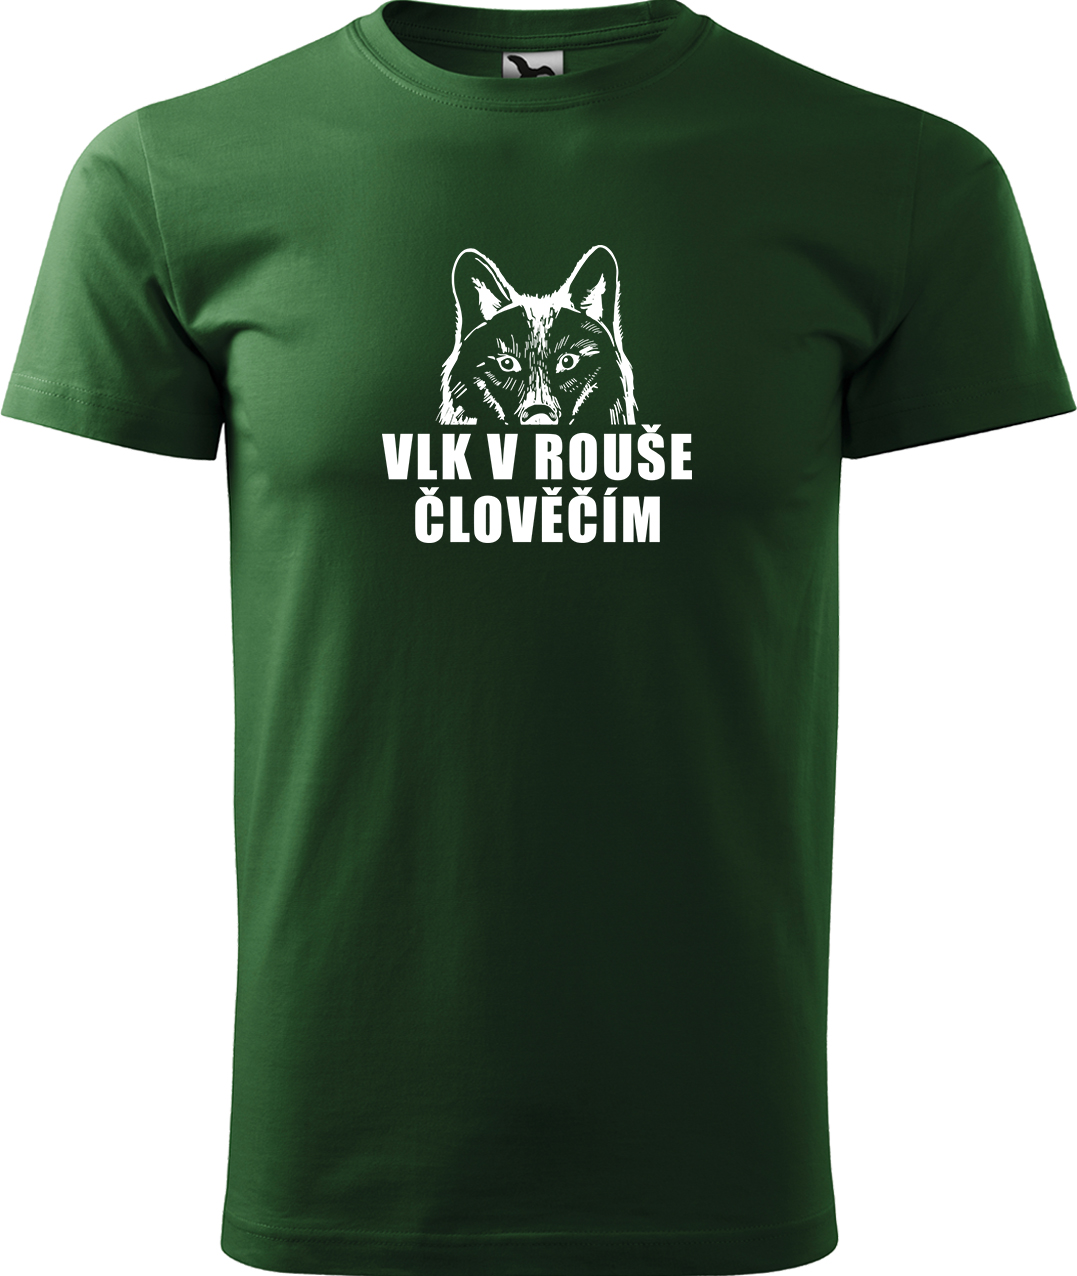 Pánské tričko s vlkem - Vlk v rouše člověčím Velikost: S, Barva: Lahvově zelená (06), Střih: pánský